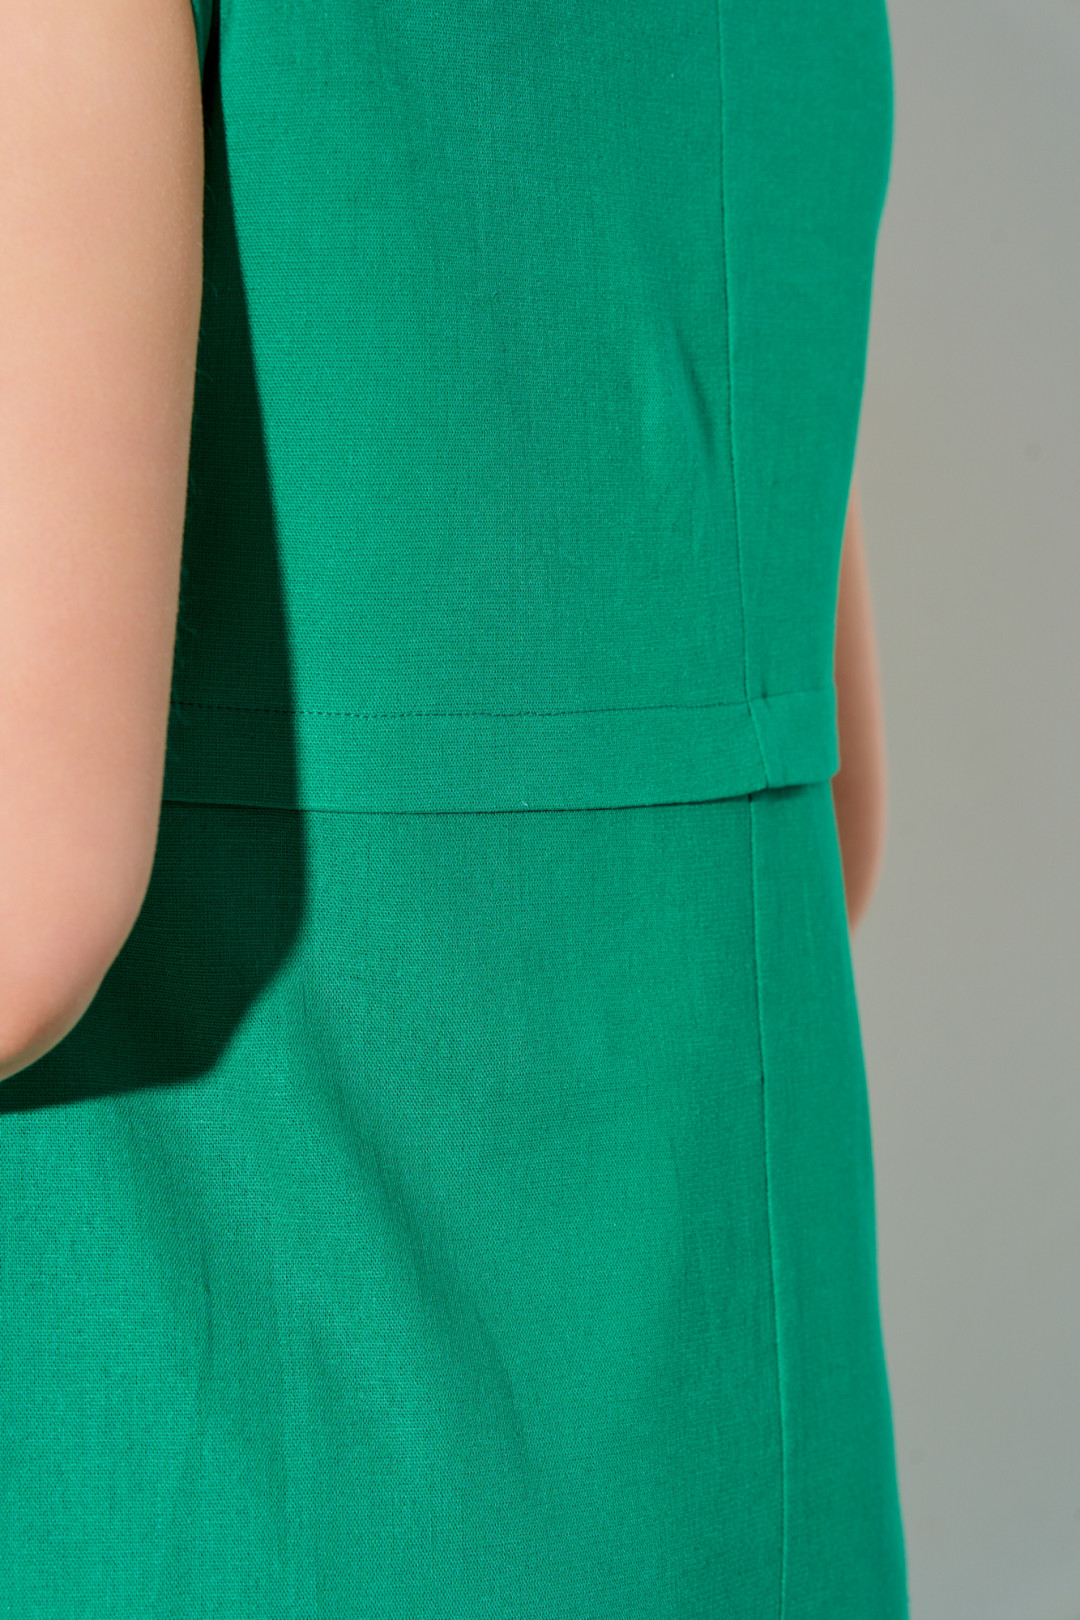 Платье Ива 928 зеленый